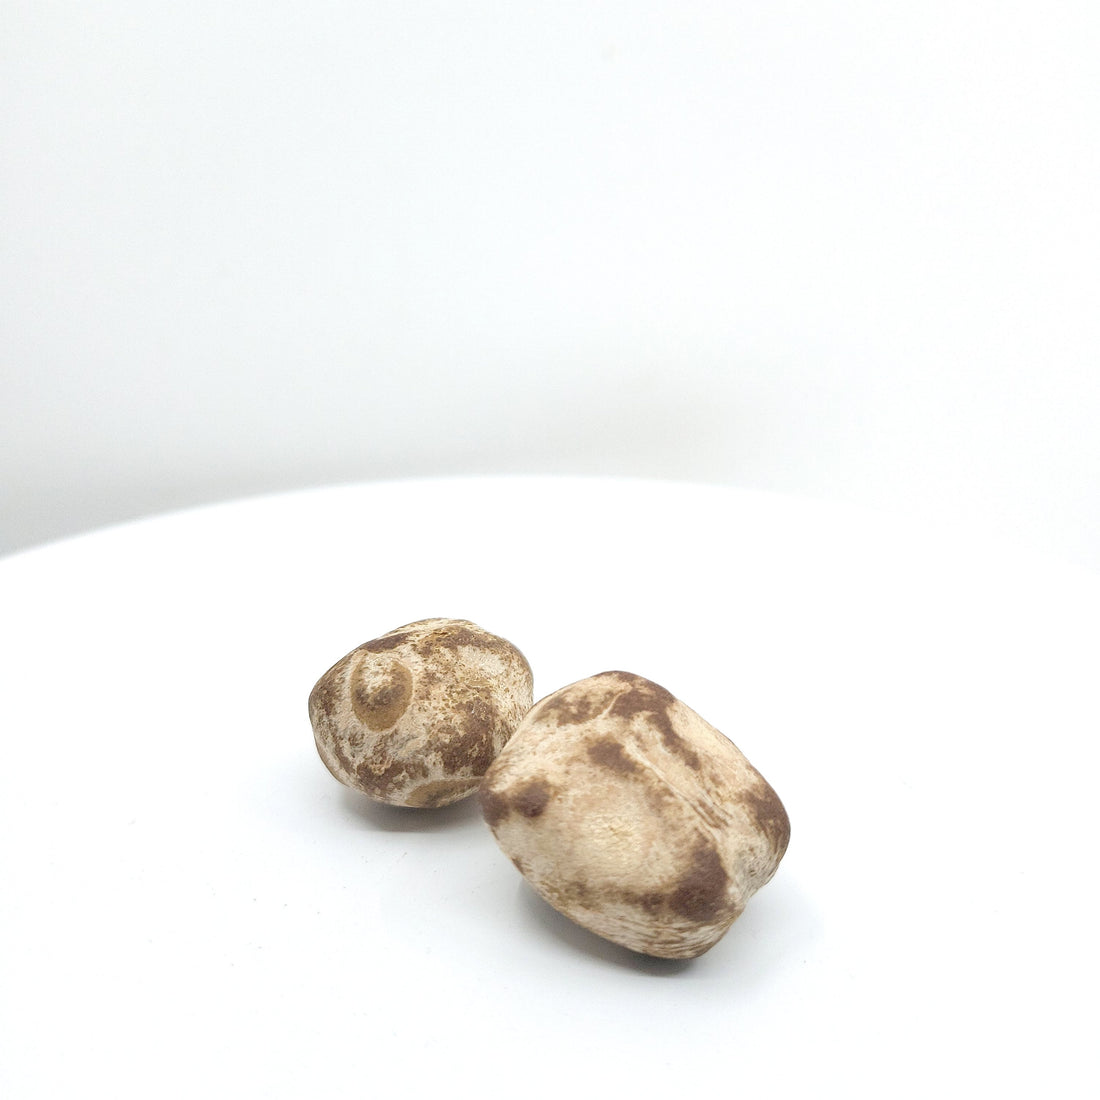 Dried Marula nuts